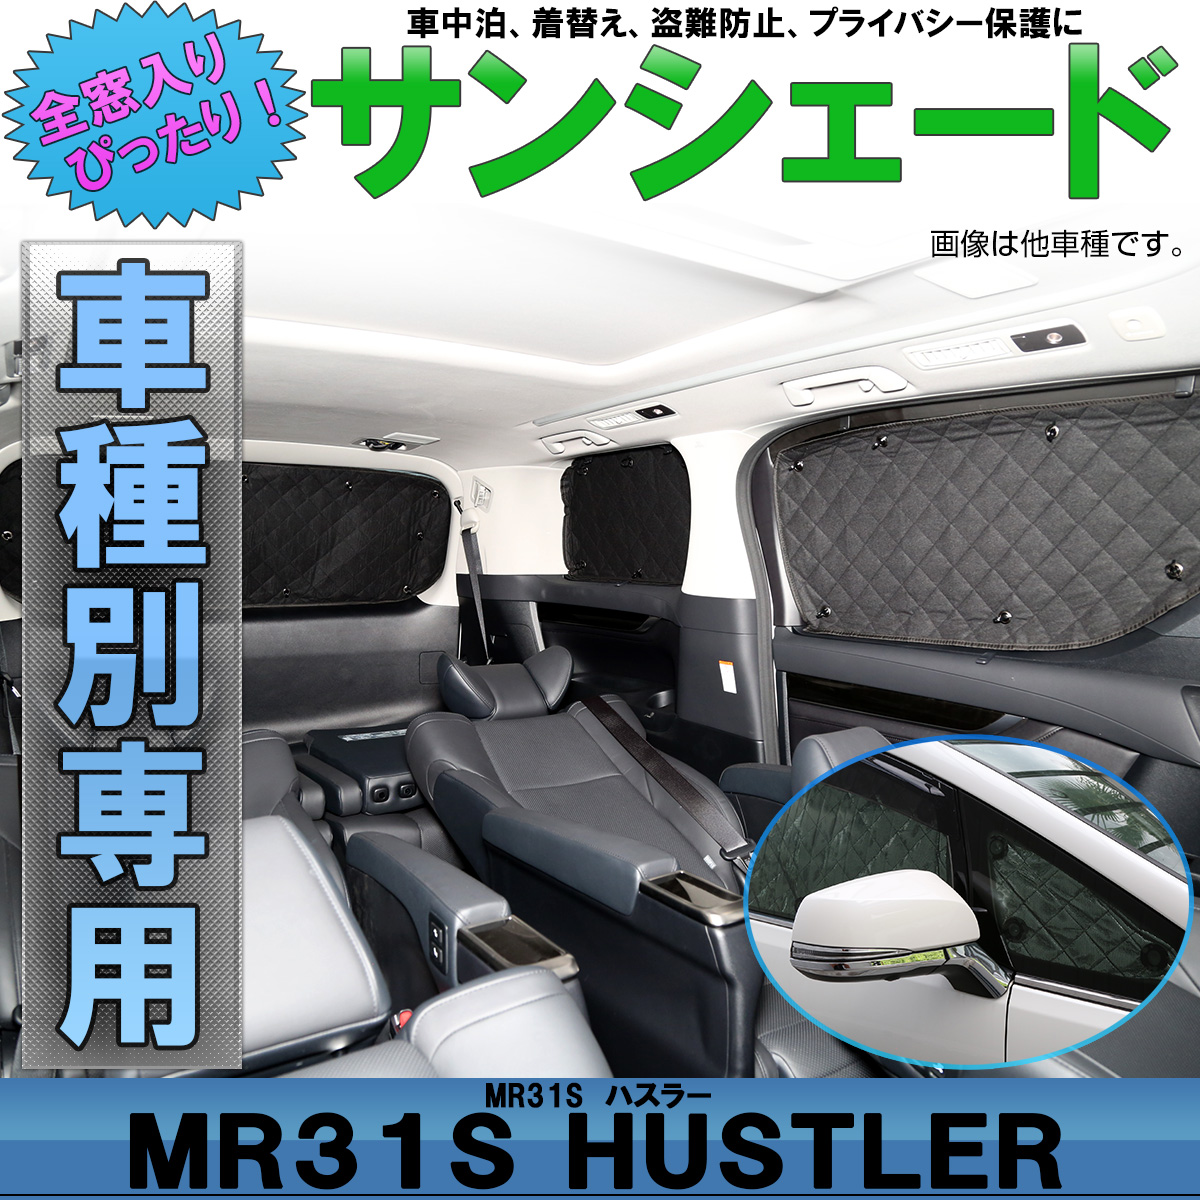 スズキ Mr31s Mr41s ハスラー 専用 サンシェード 全窓セット 5層 ブラックメッシュ 車中泊 アウトドア S 813